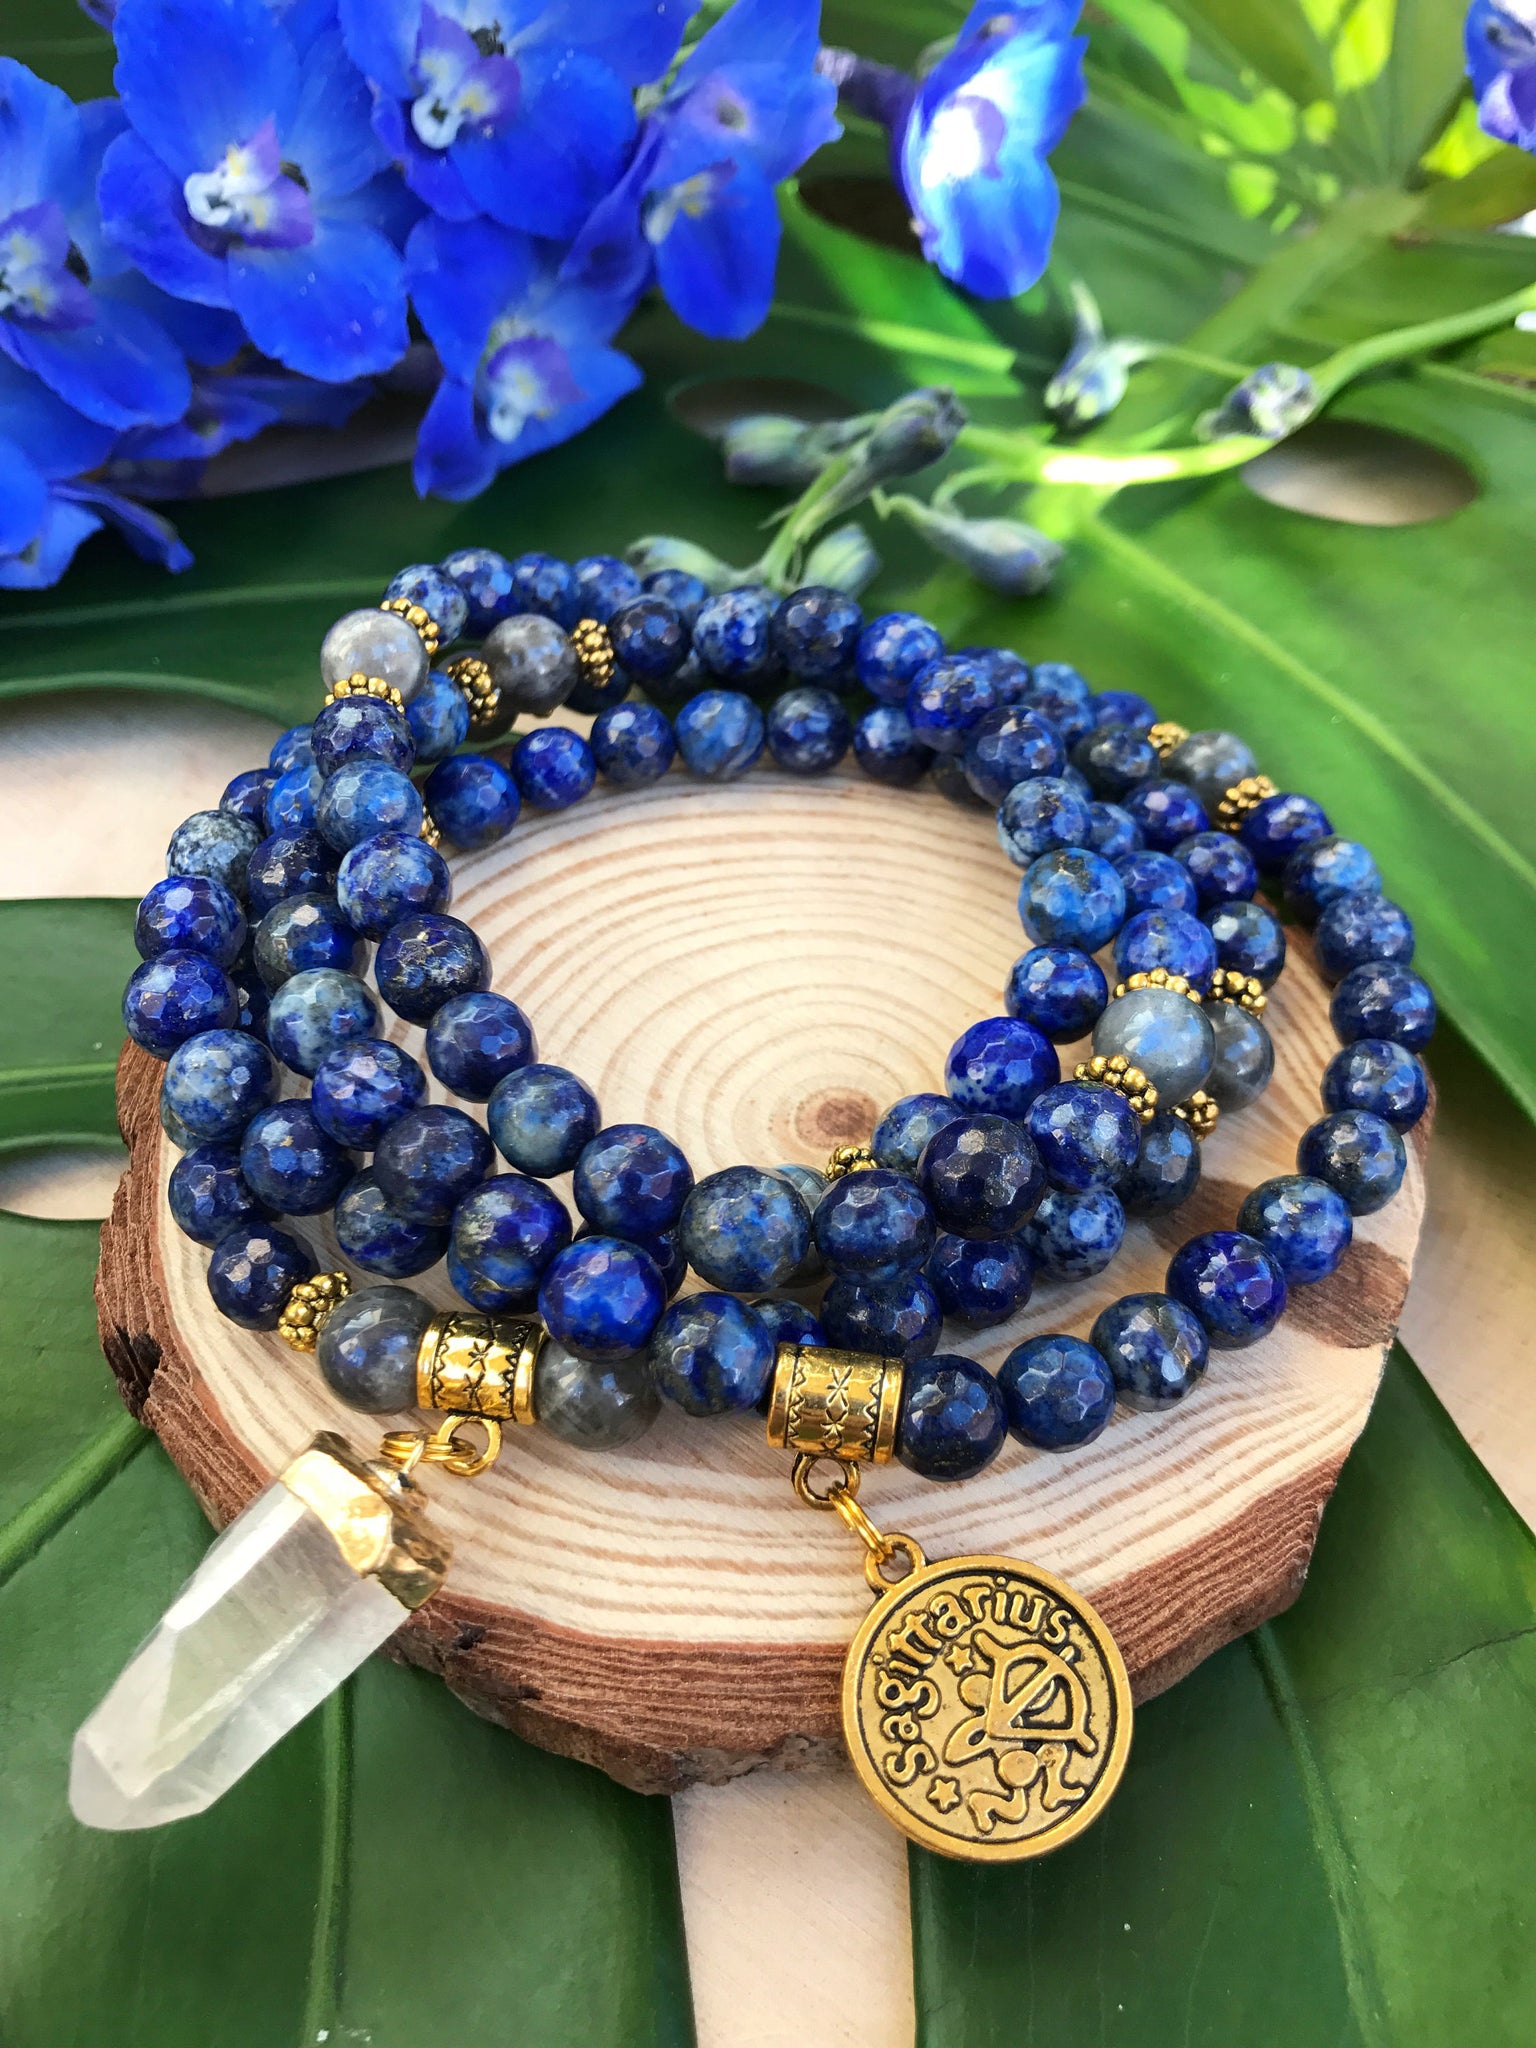 Lapis Lazuli Wrist Mala Beads - Tibetan Buddhist Mala